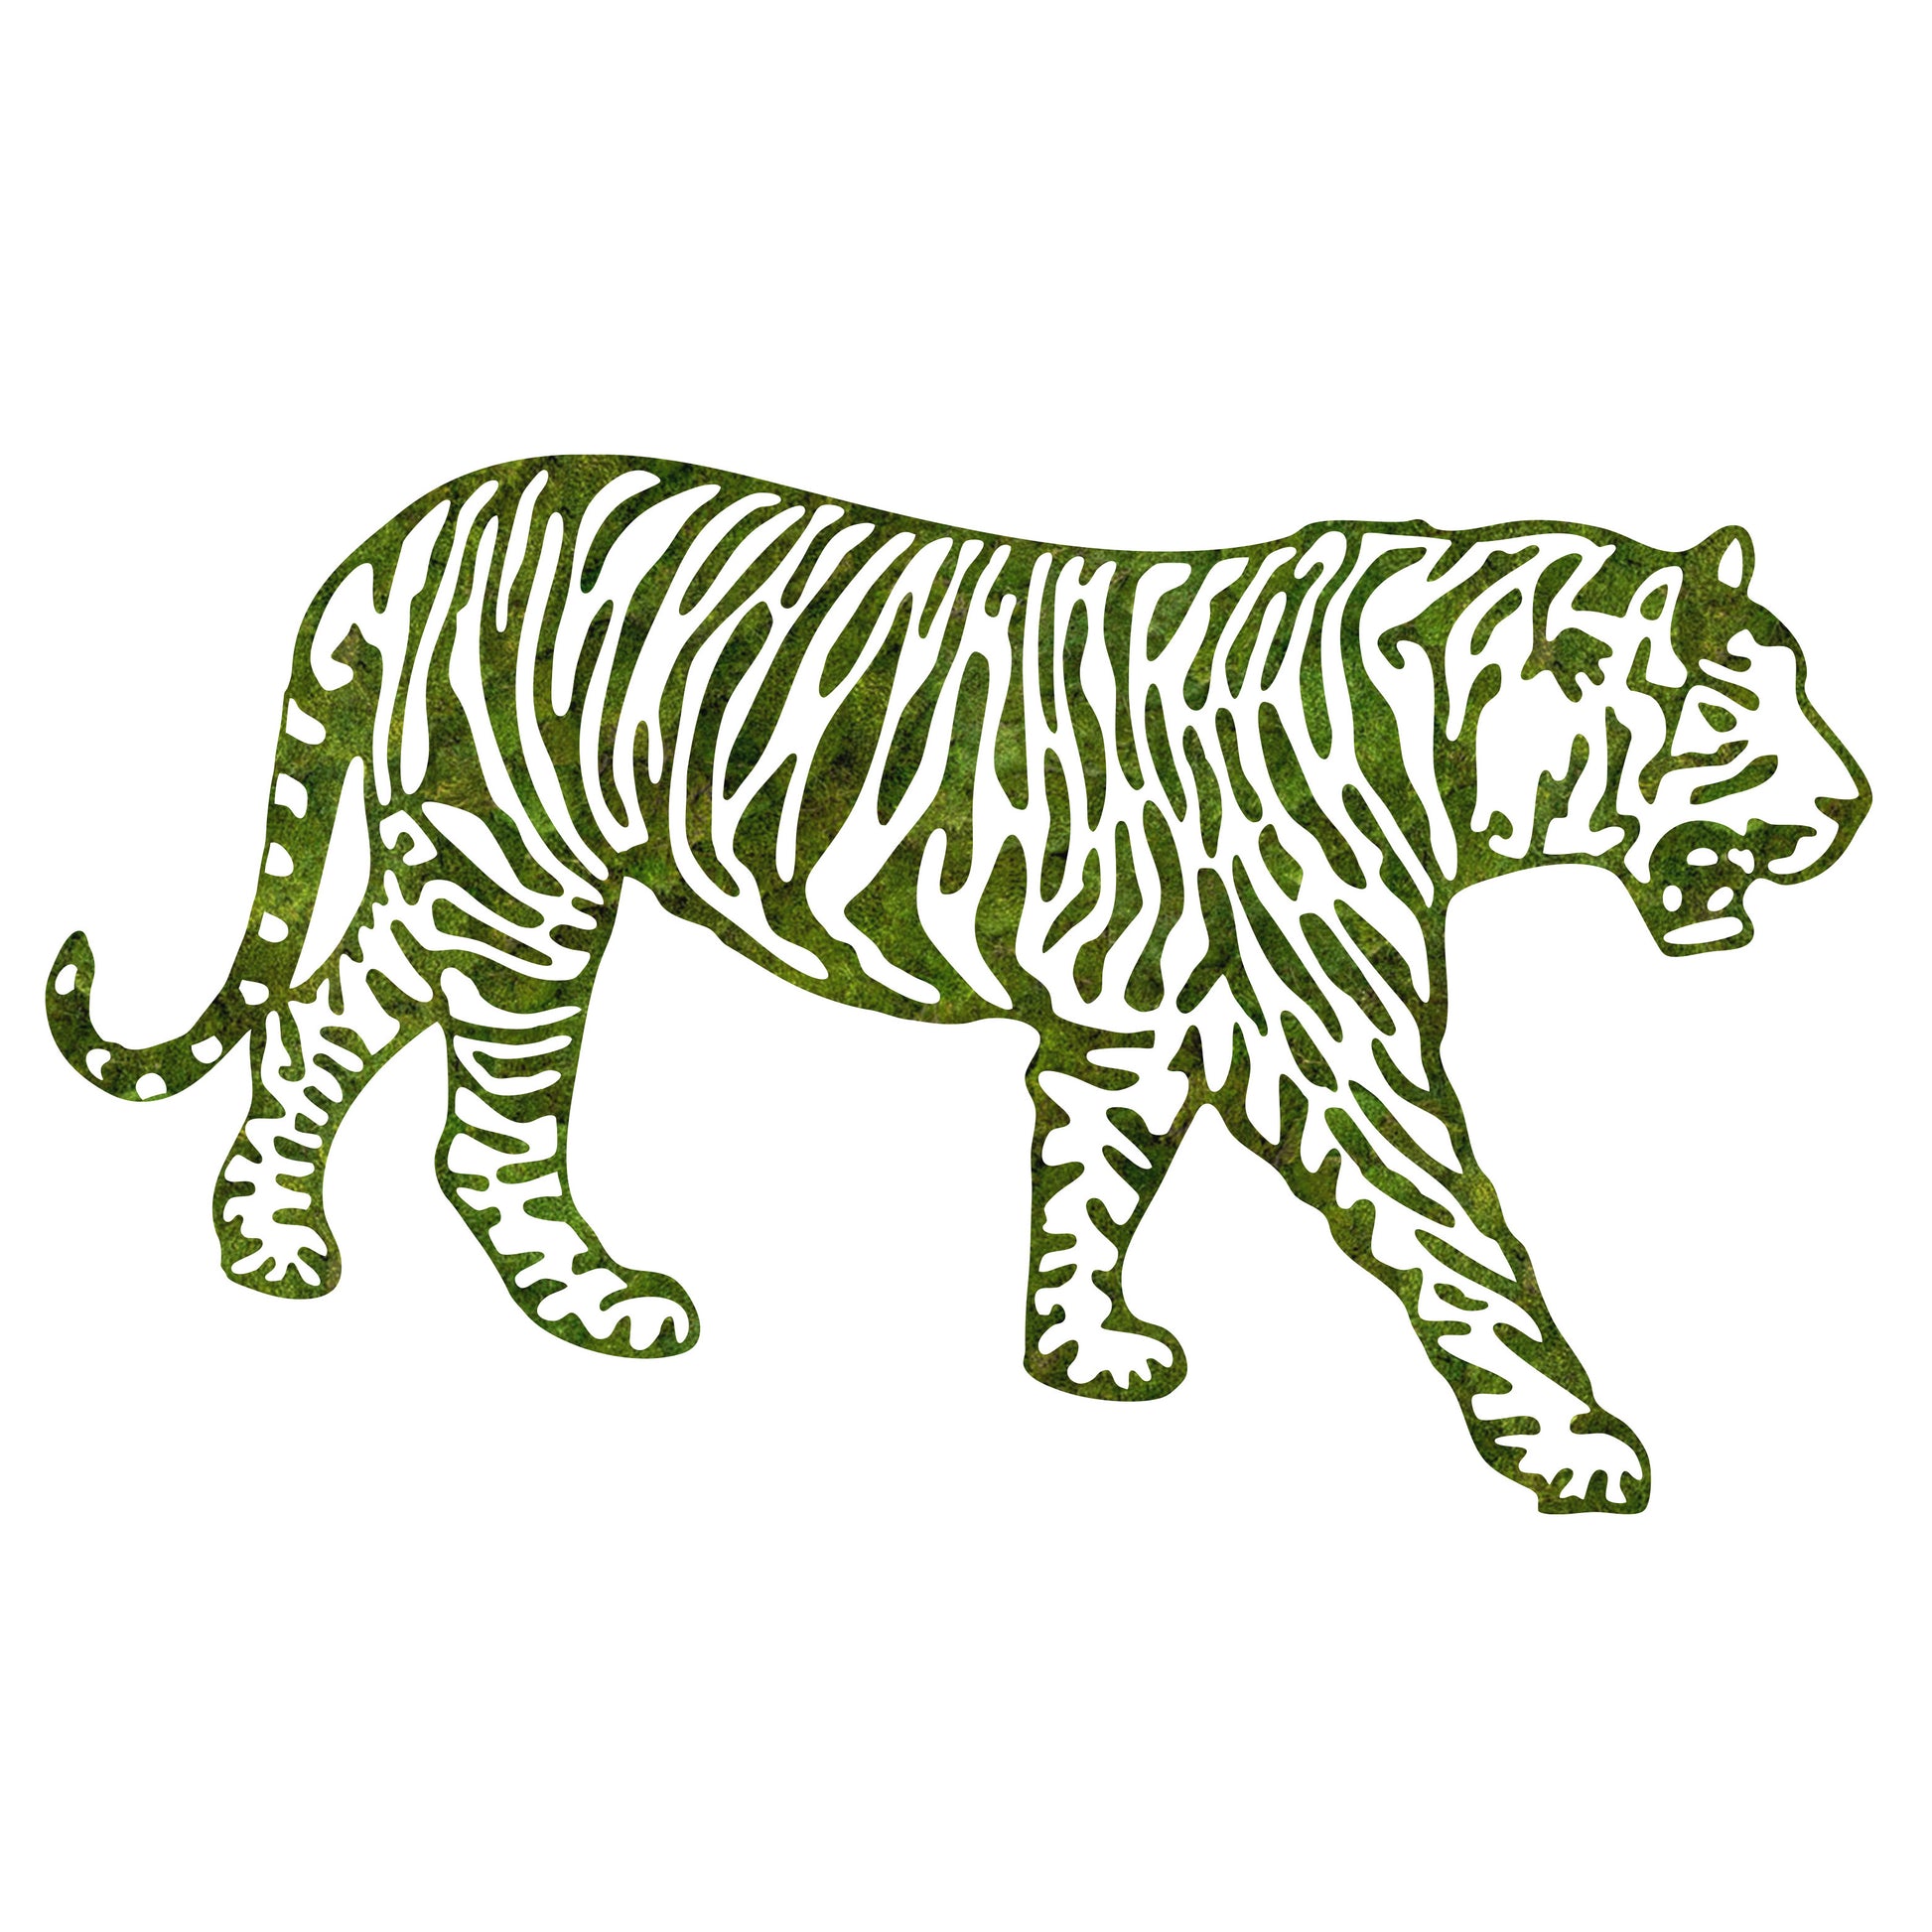 Sacred Animal Collection - "Tiger"